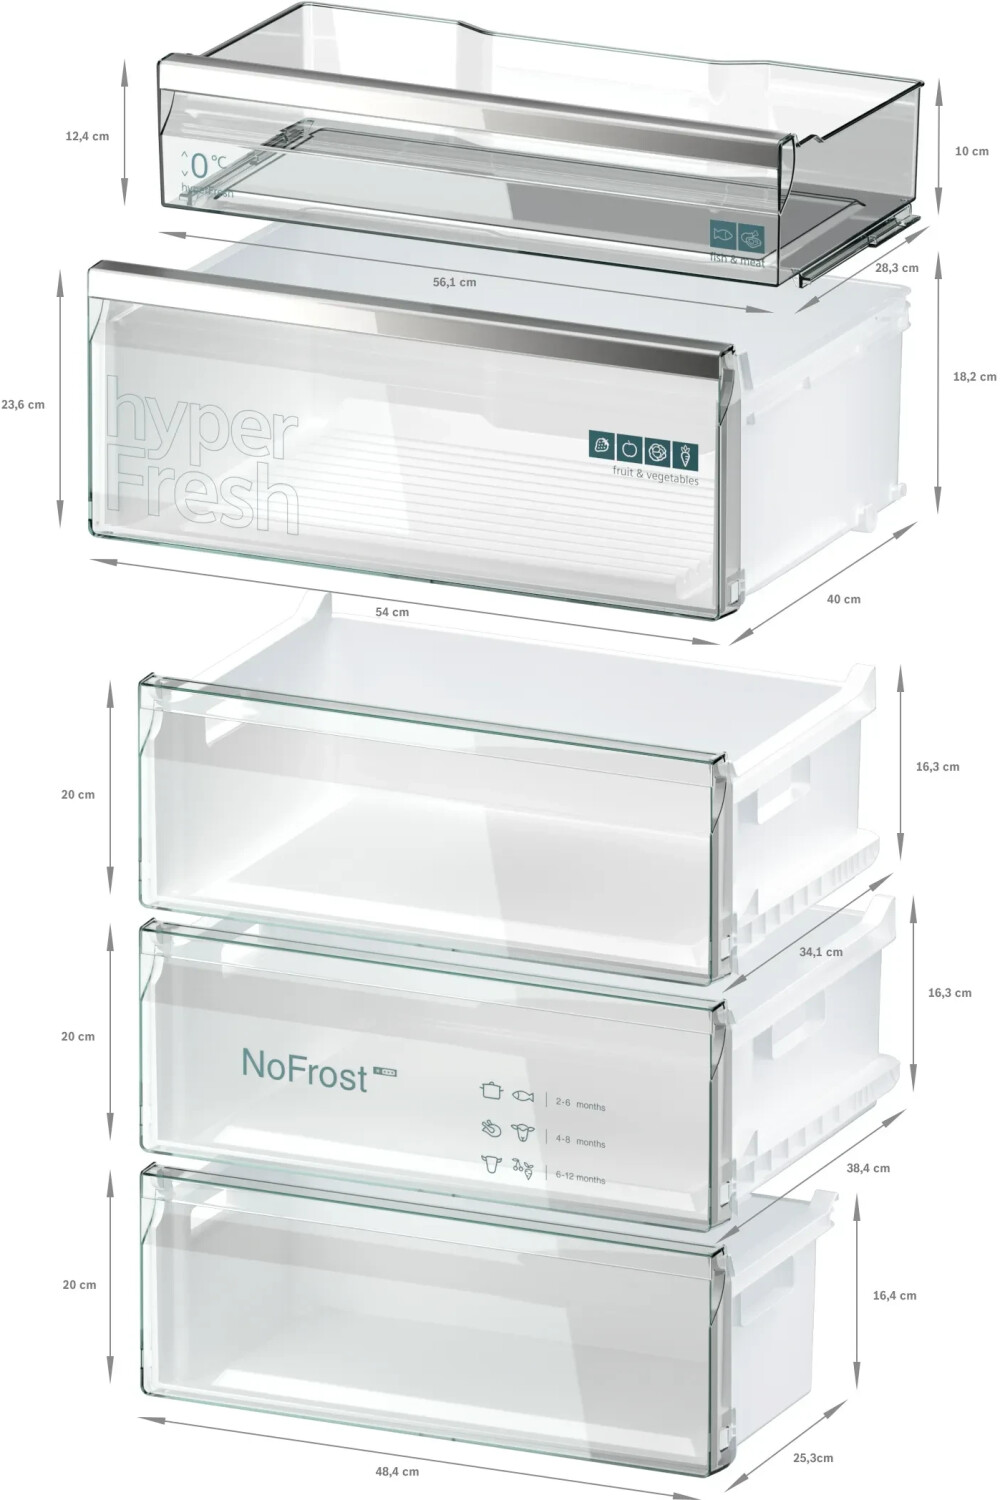 Siemens KG49NAXCF  Smart Kühlschrank  178 kWh/Jahr  Inhalt Kühlbereich 311 Liter  Höhe 203 cm